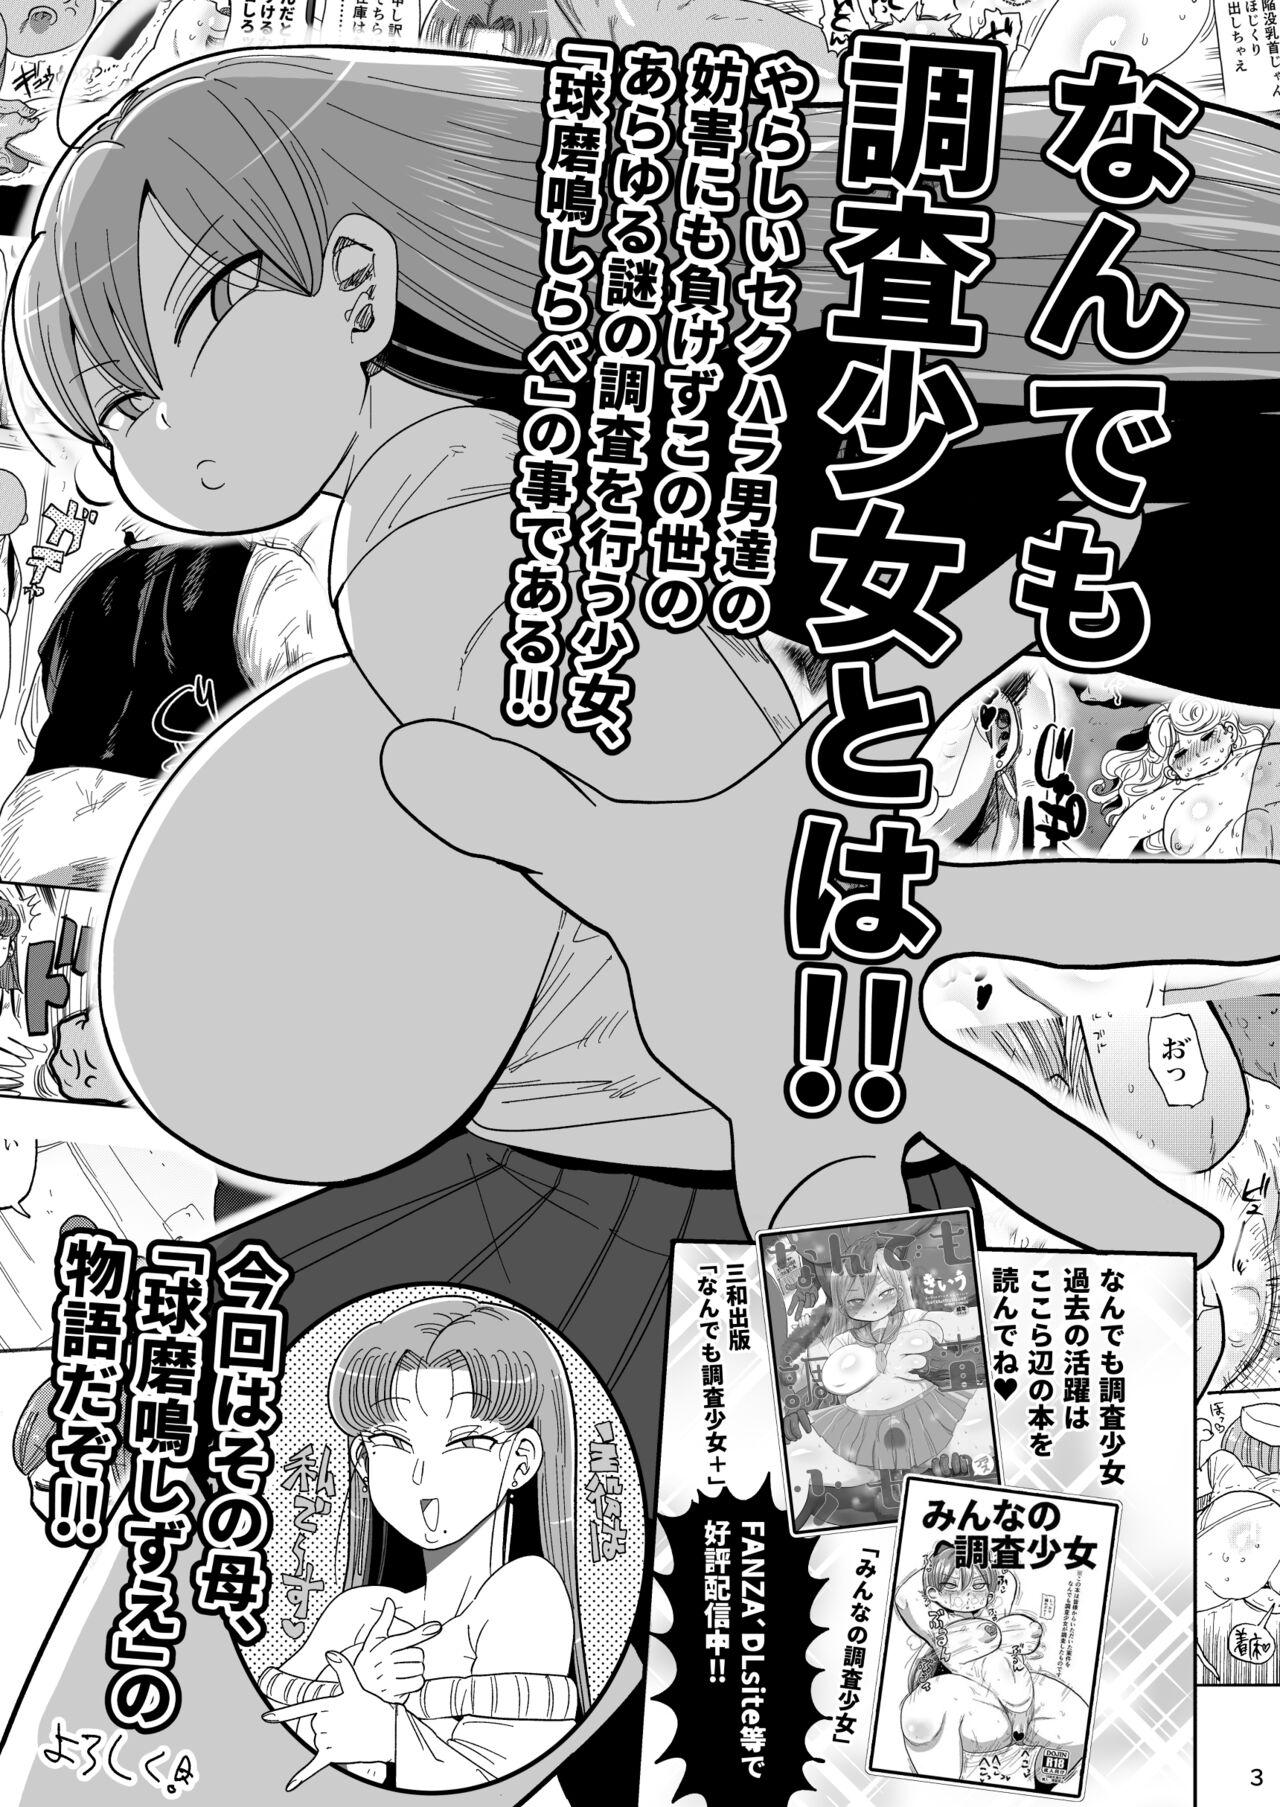 Tiny Tits Porn Nandemo Chousa Mama Kuma Shizue ha TEIKO ga dekinai - Original Funny - Page 2